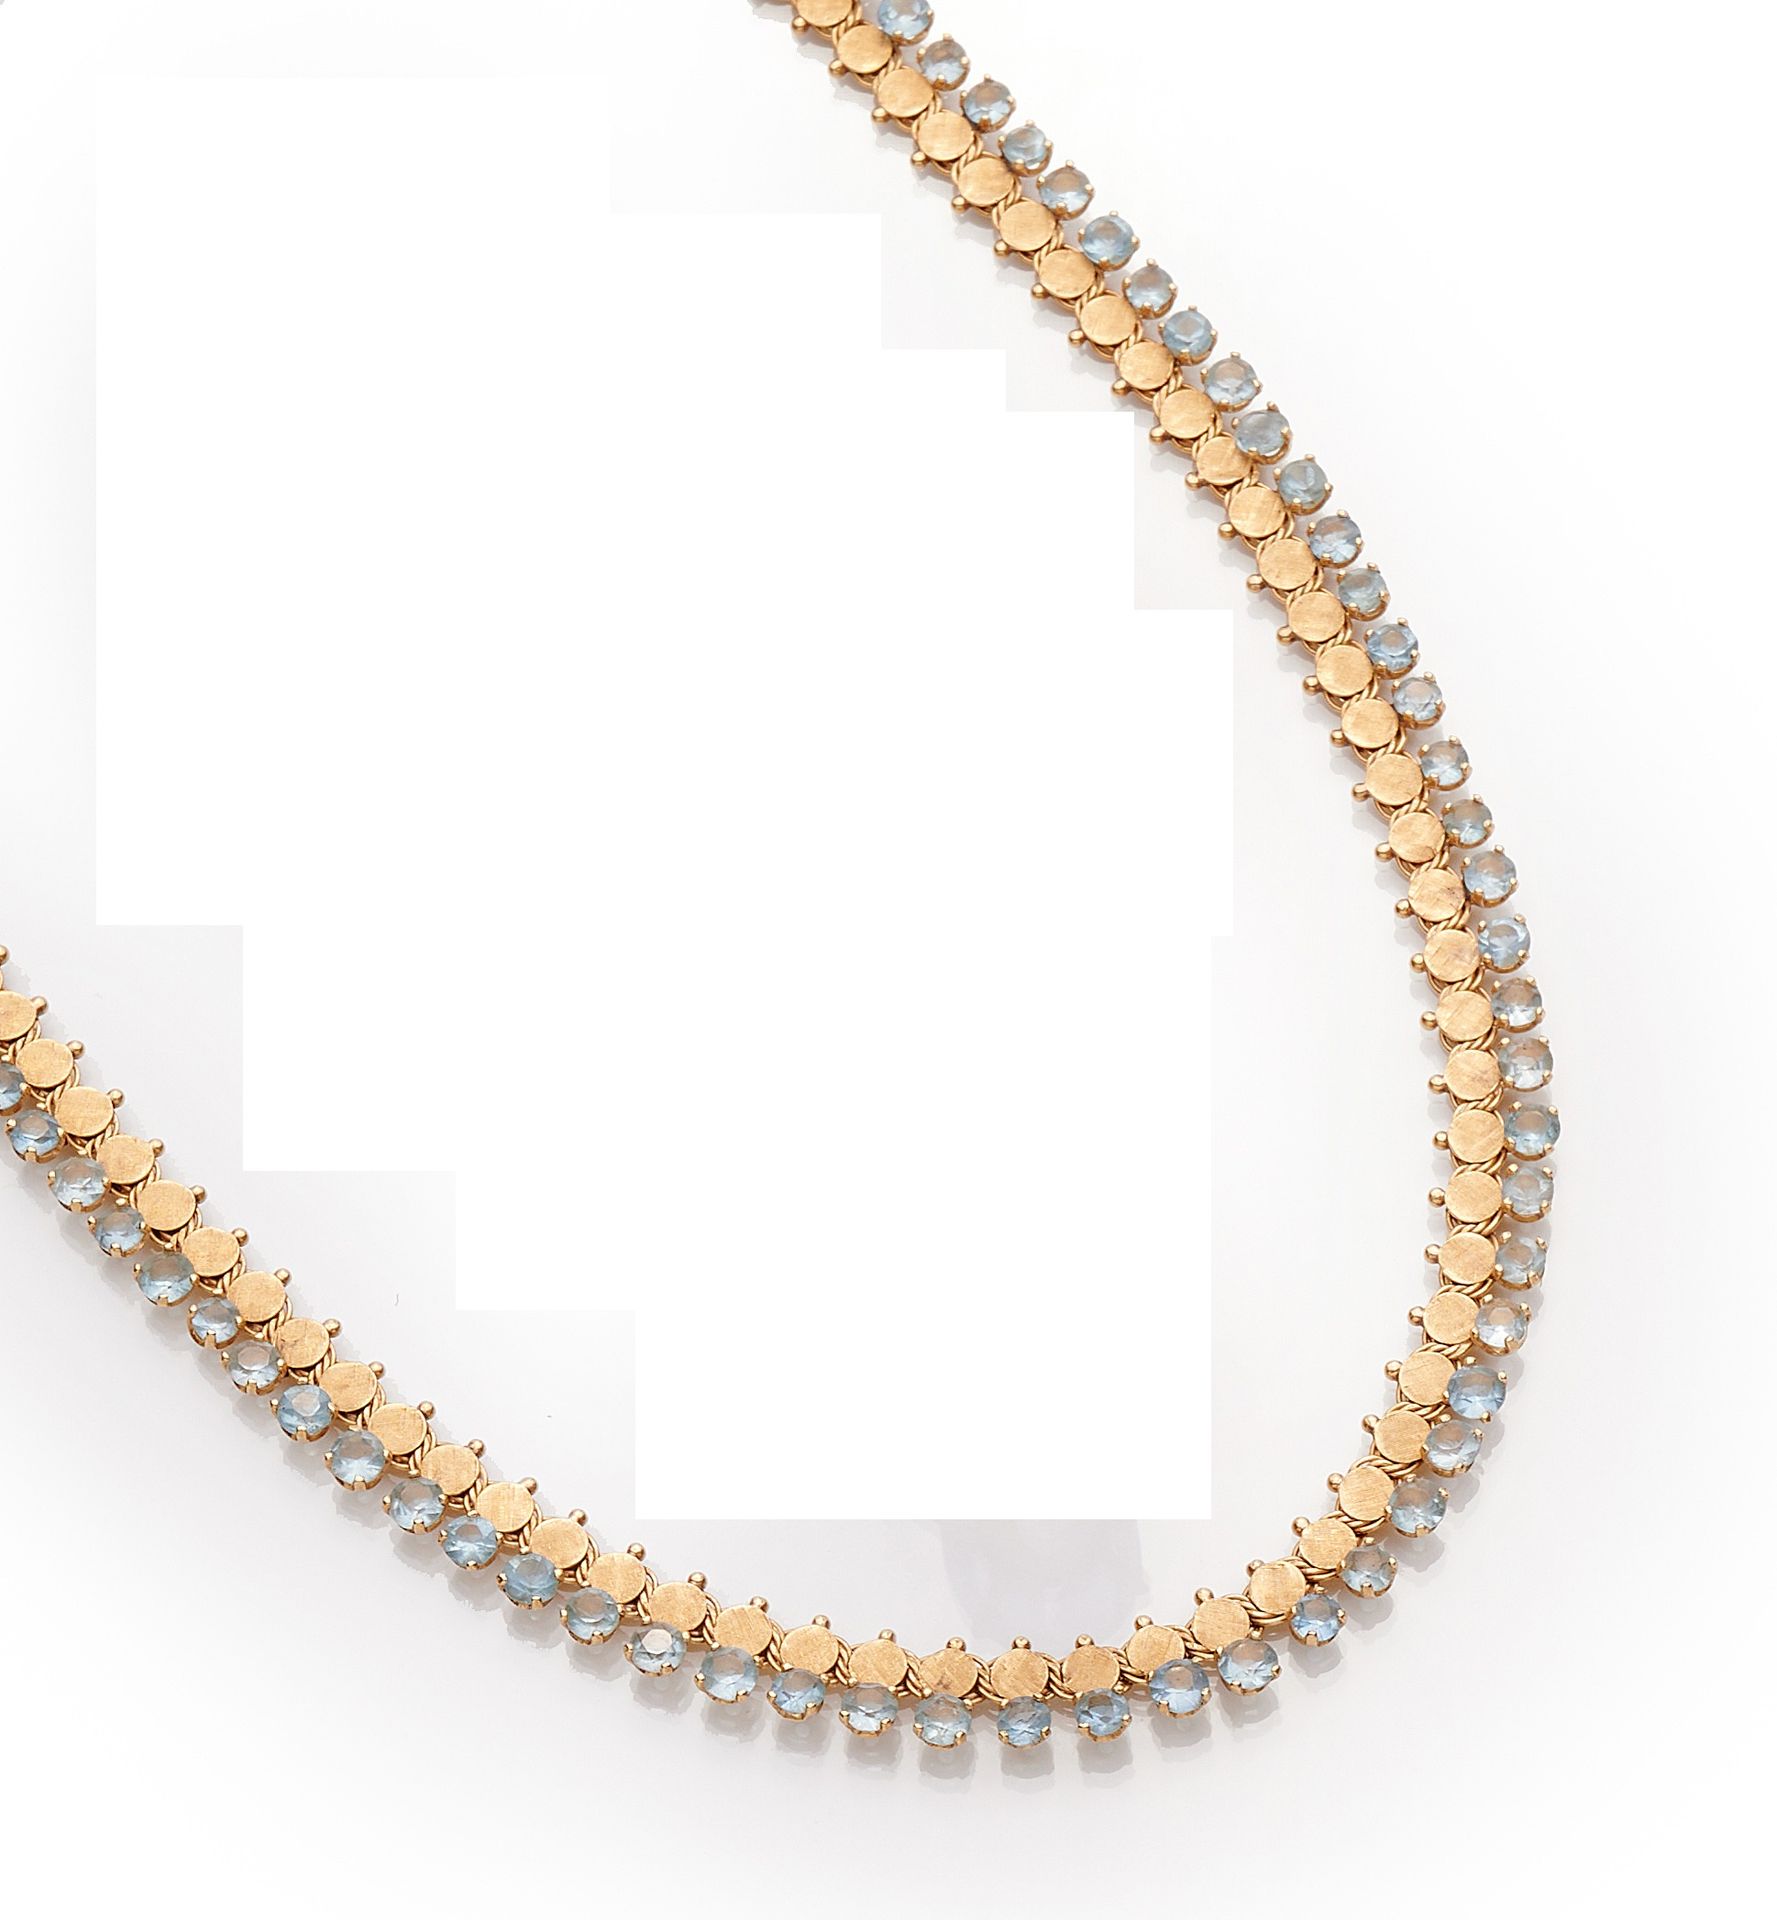 Null 750‰的18K黄金项链，由装饰有圆形粘贴物和合成蓝宝石的扁平链节组成。棘轮和八个安全扣。
长度：41厘米
事故和使用痕迹。
毛重：31.80克